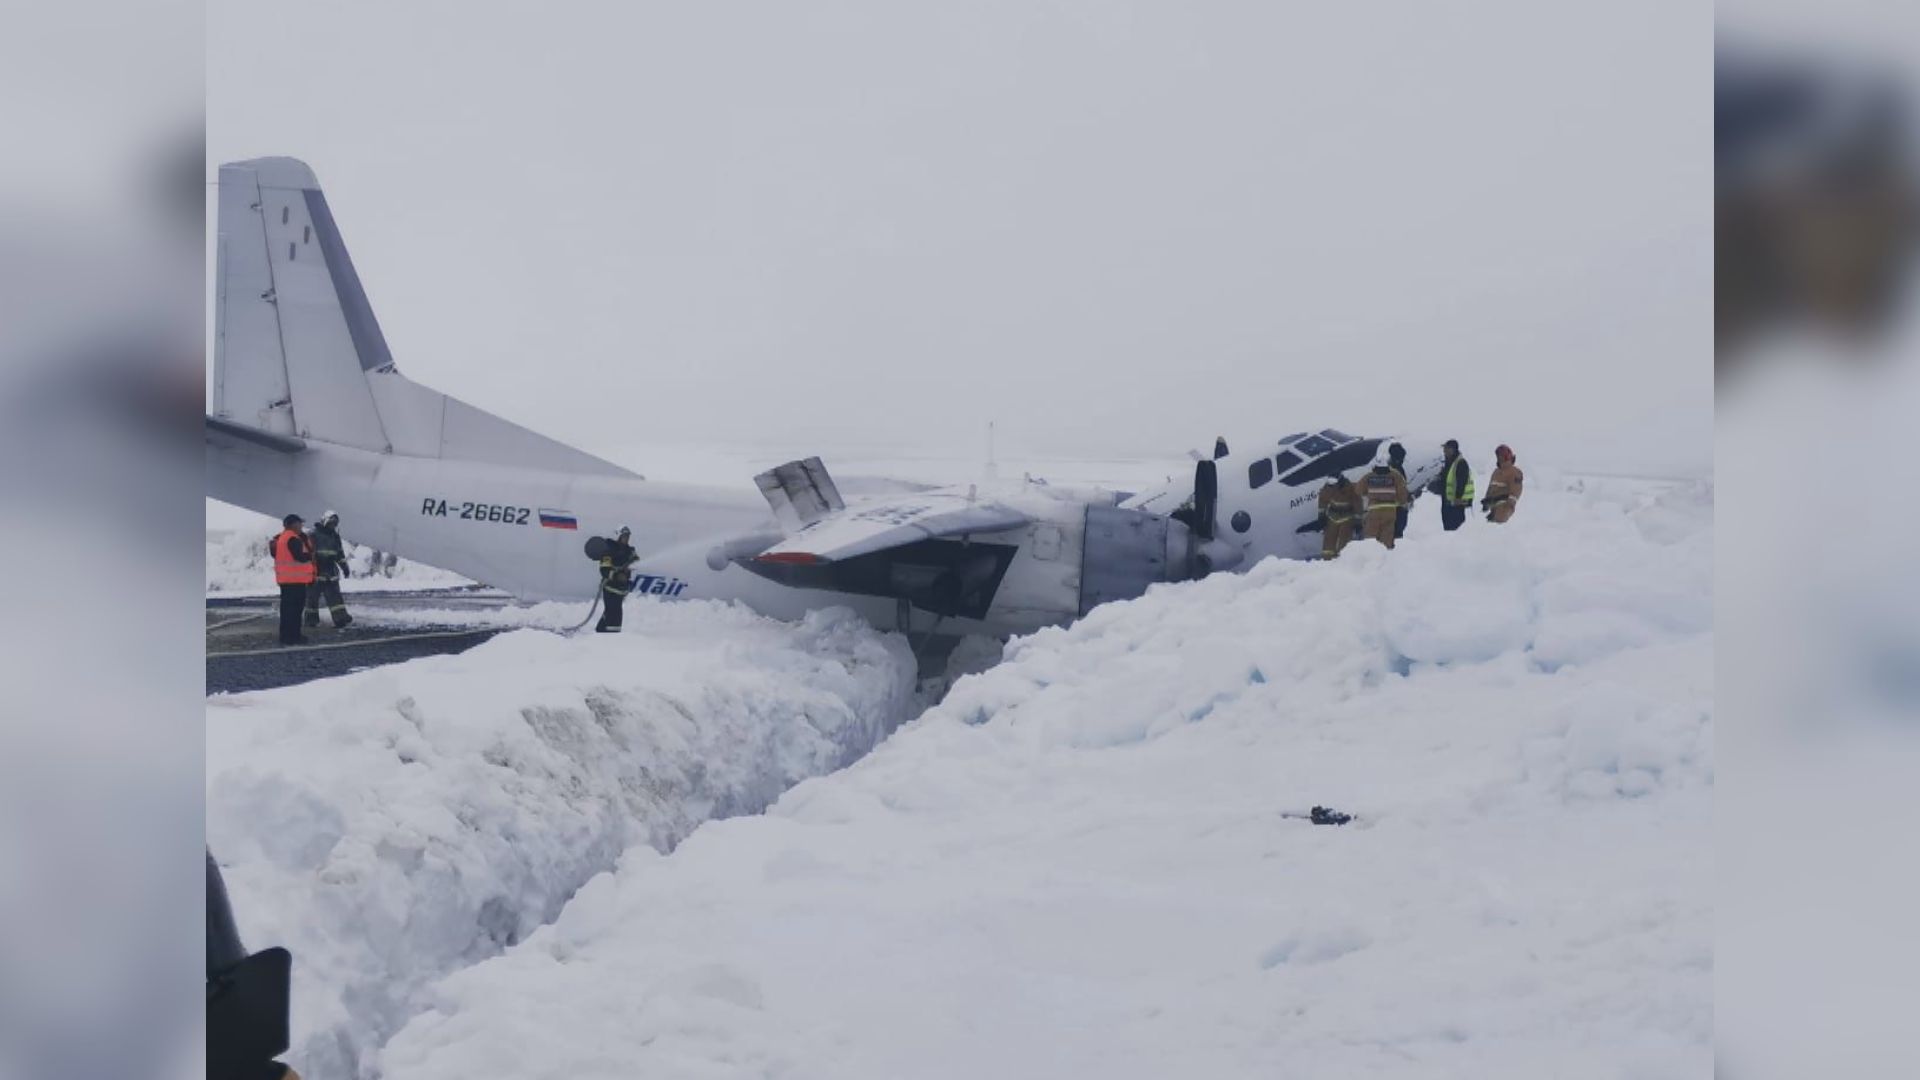 俄羅斯客機在北極地區迫降 機身斷開兩截 機上人員全數生還